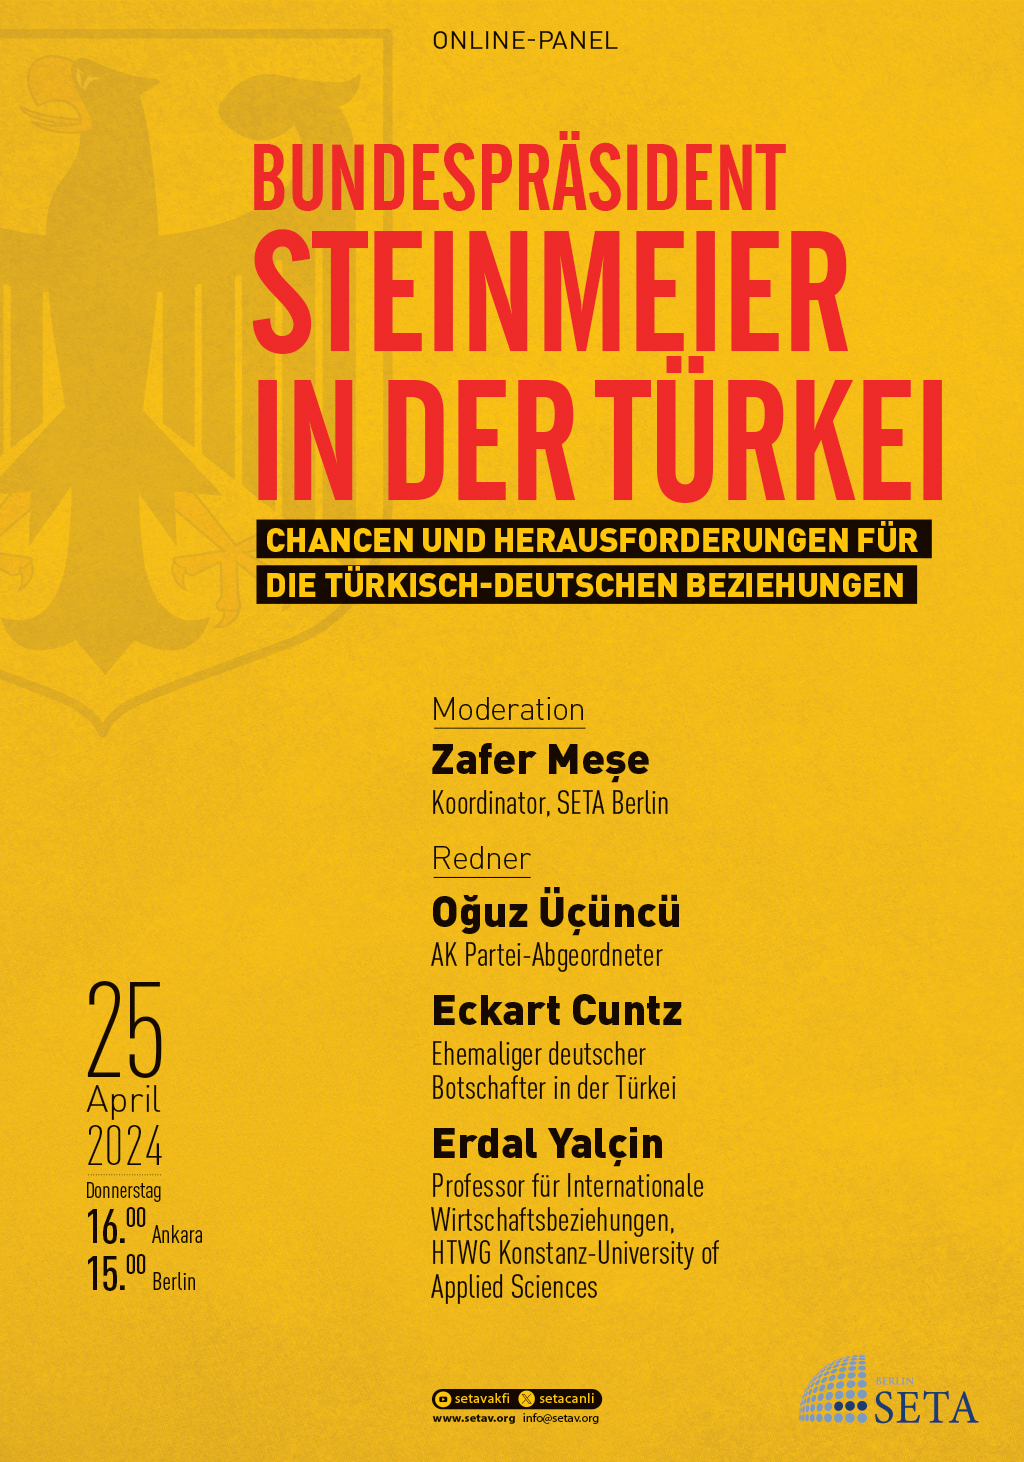 Online Panel: Bundespräsident Steinmeier in der Türkei | Chancen und Herausforderungen für die türkisch-deutschen Beziehungen